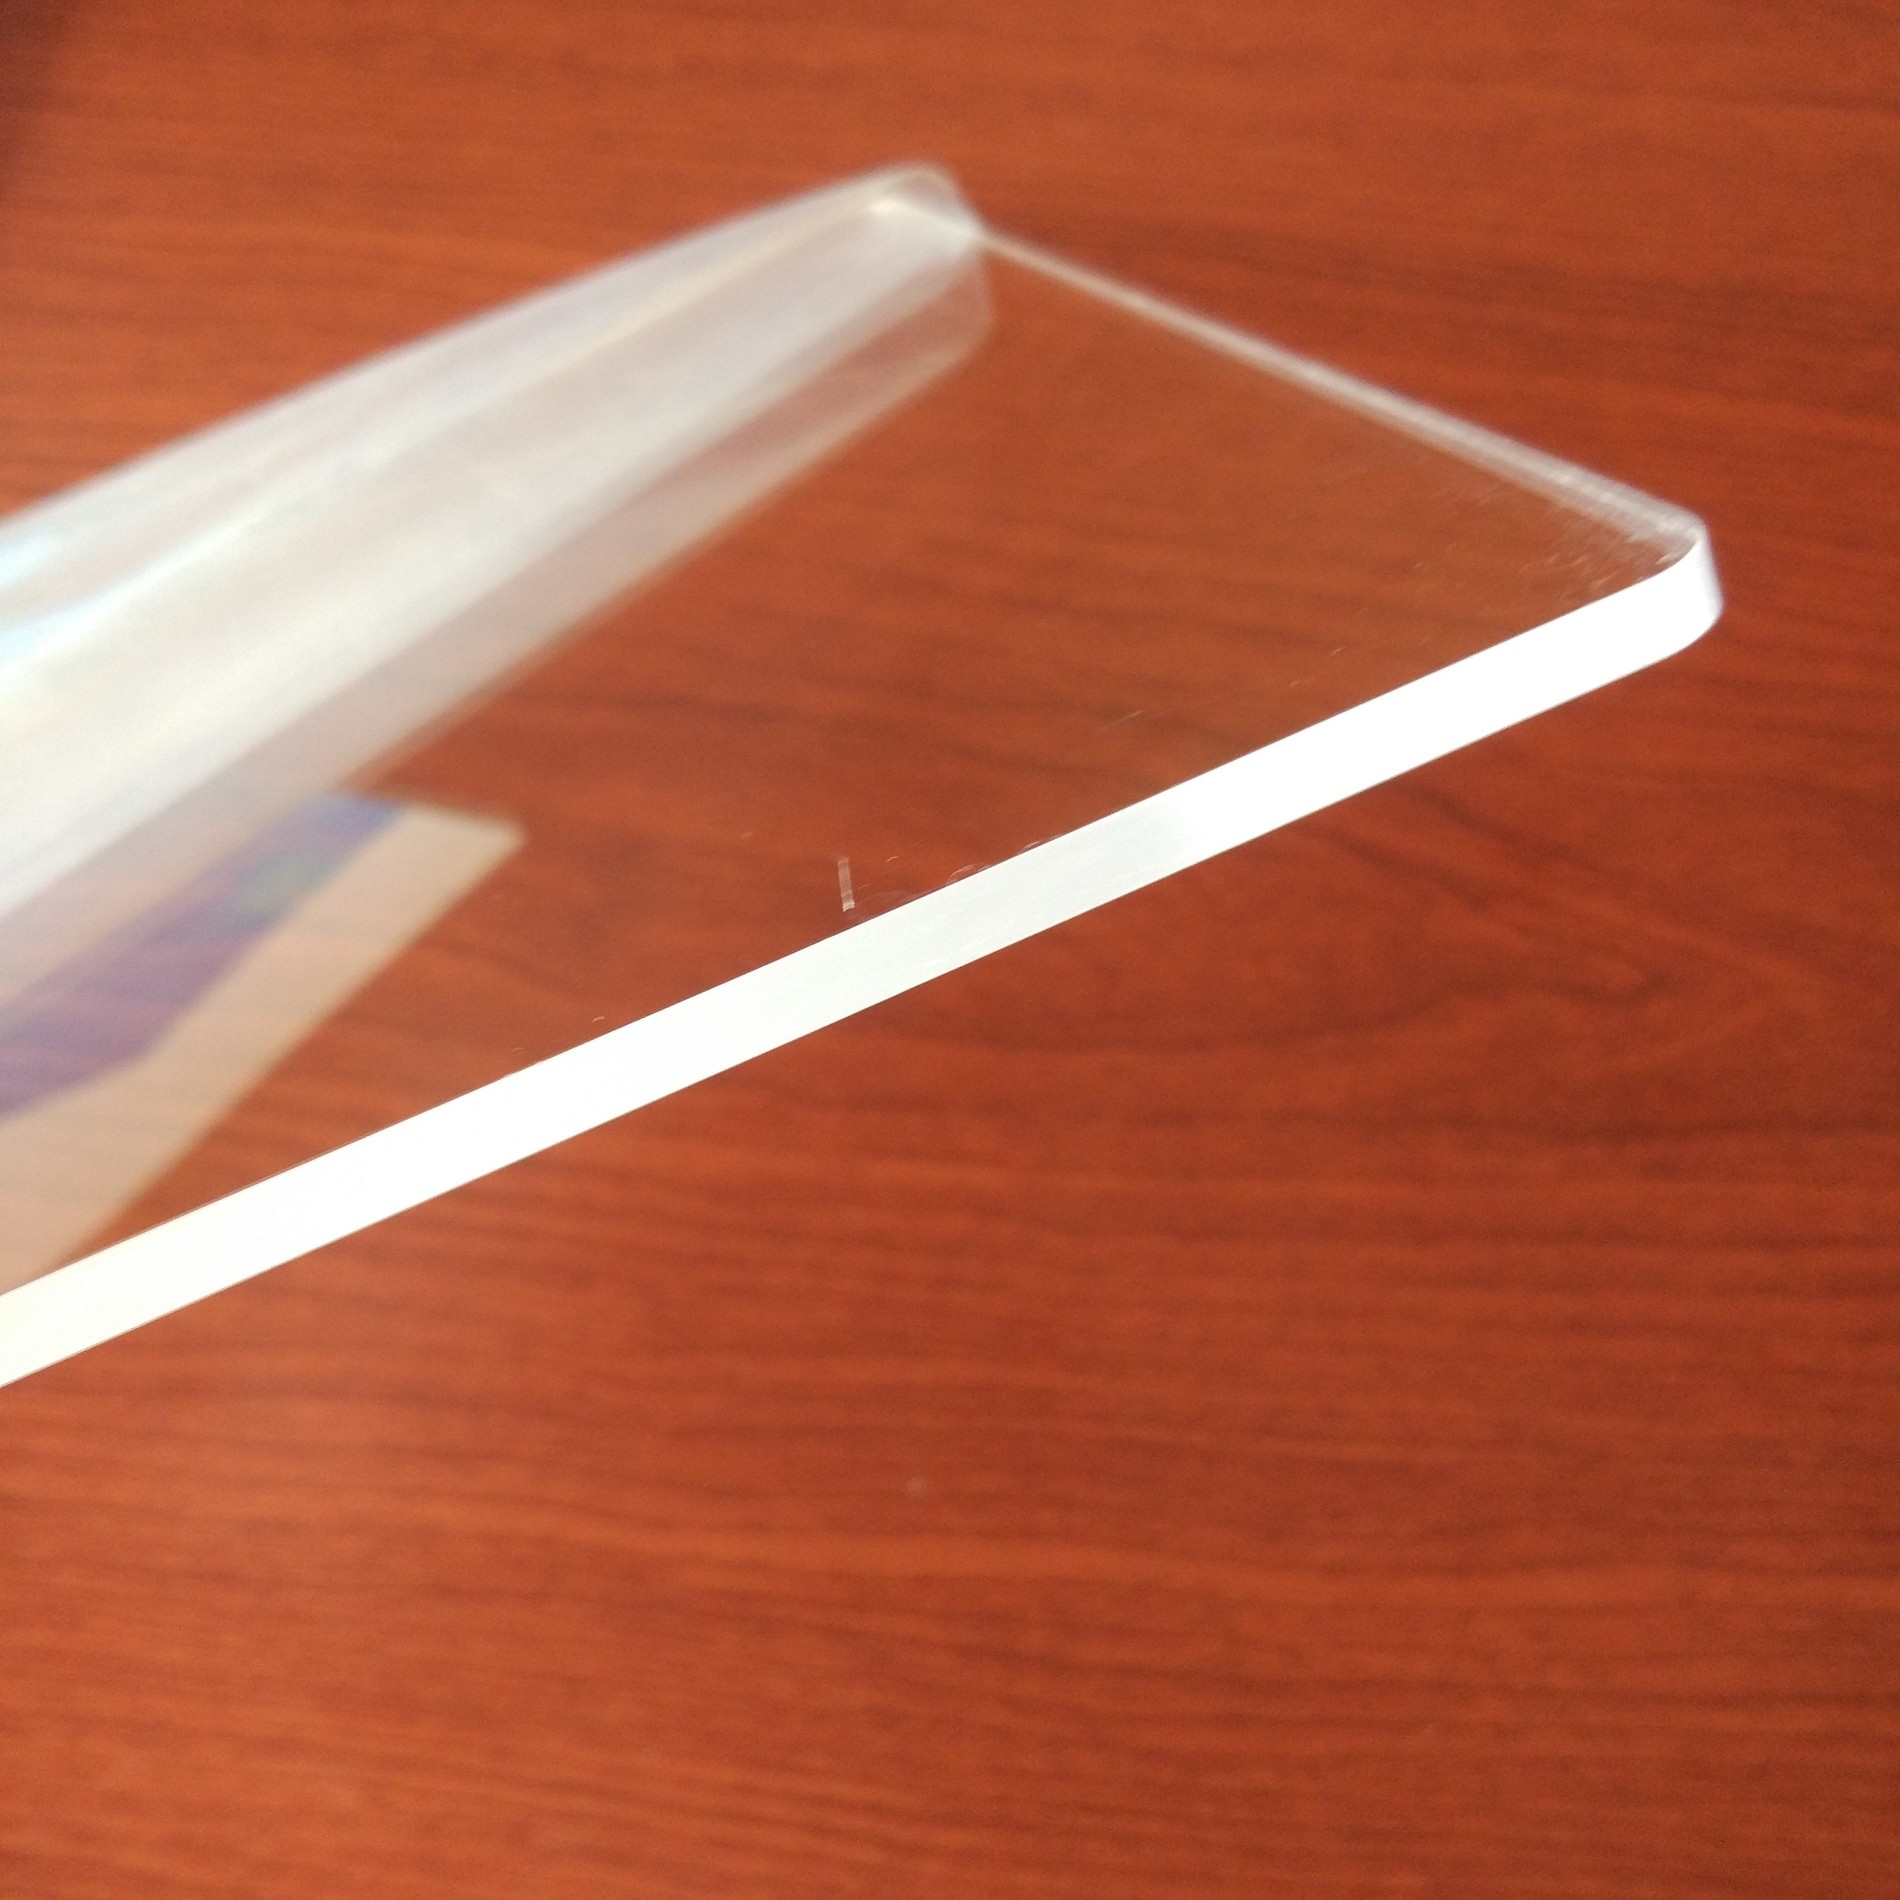 ซื้อสะท้อนสูง Plexiglass จานสำหรับกรอบรูป,สะท้อนสูง Plexiglass จานสำหรับกรอบรูปราคา,สะท้อนสูง Plexiglass จานสำหรับกรอบรูปแบรนด์,สะท้อนสูง Plexiglass จานสำหรับกรอบรูปผู้ผลิต,สะท้อนสูง Plexiglass จานสำหรับกรอบรูปสภาวะตลาด,สะท้อนสูง Plexiglass จานสำหรับกรอบรูปบริษัท